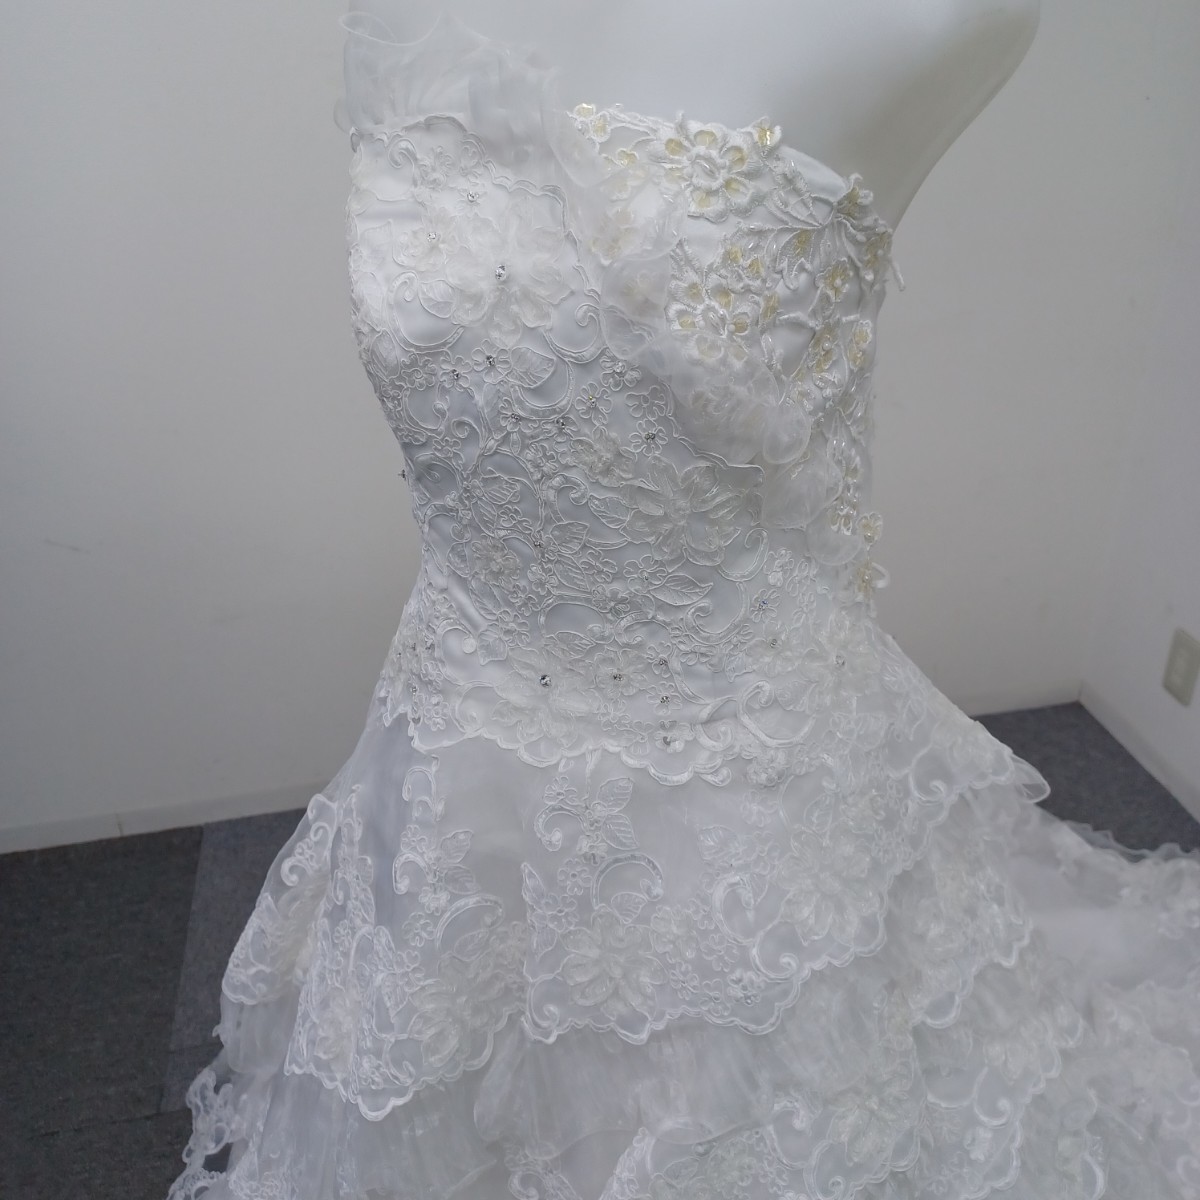  【送料無料】石) カラードレス ⑫ 大きいサイズ 白 ドレス 結婚式 パーティー 衣装 ウエディング ブライダル(240130)_画像3